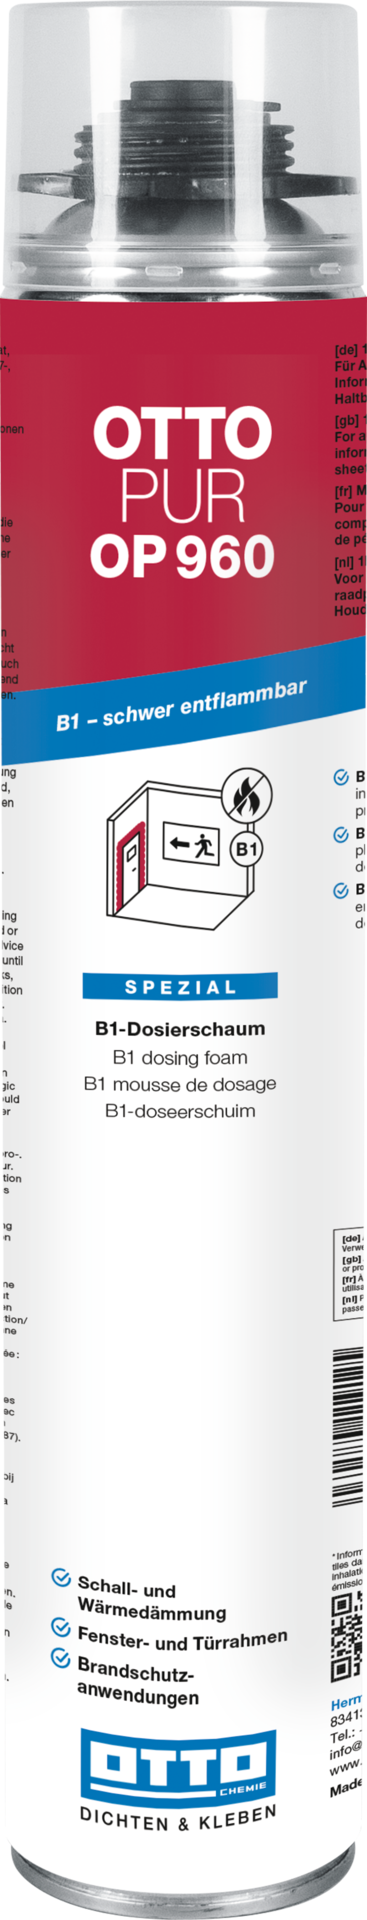 OTTOPUR OP 960 (750 ml) Der B1-Brandschutz-Dosierschaum